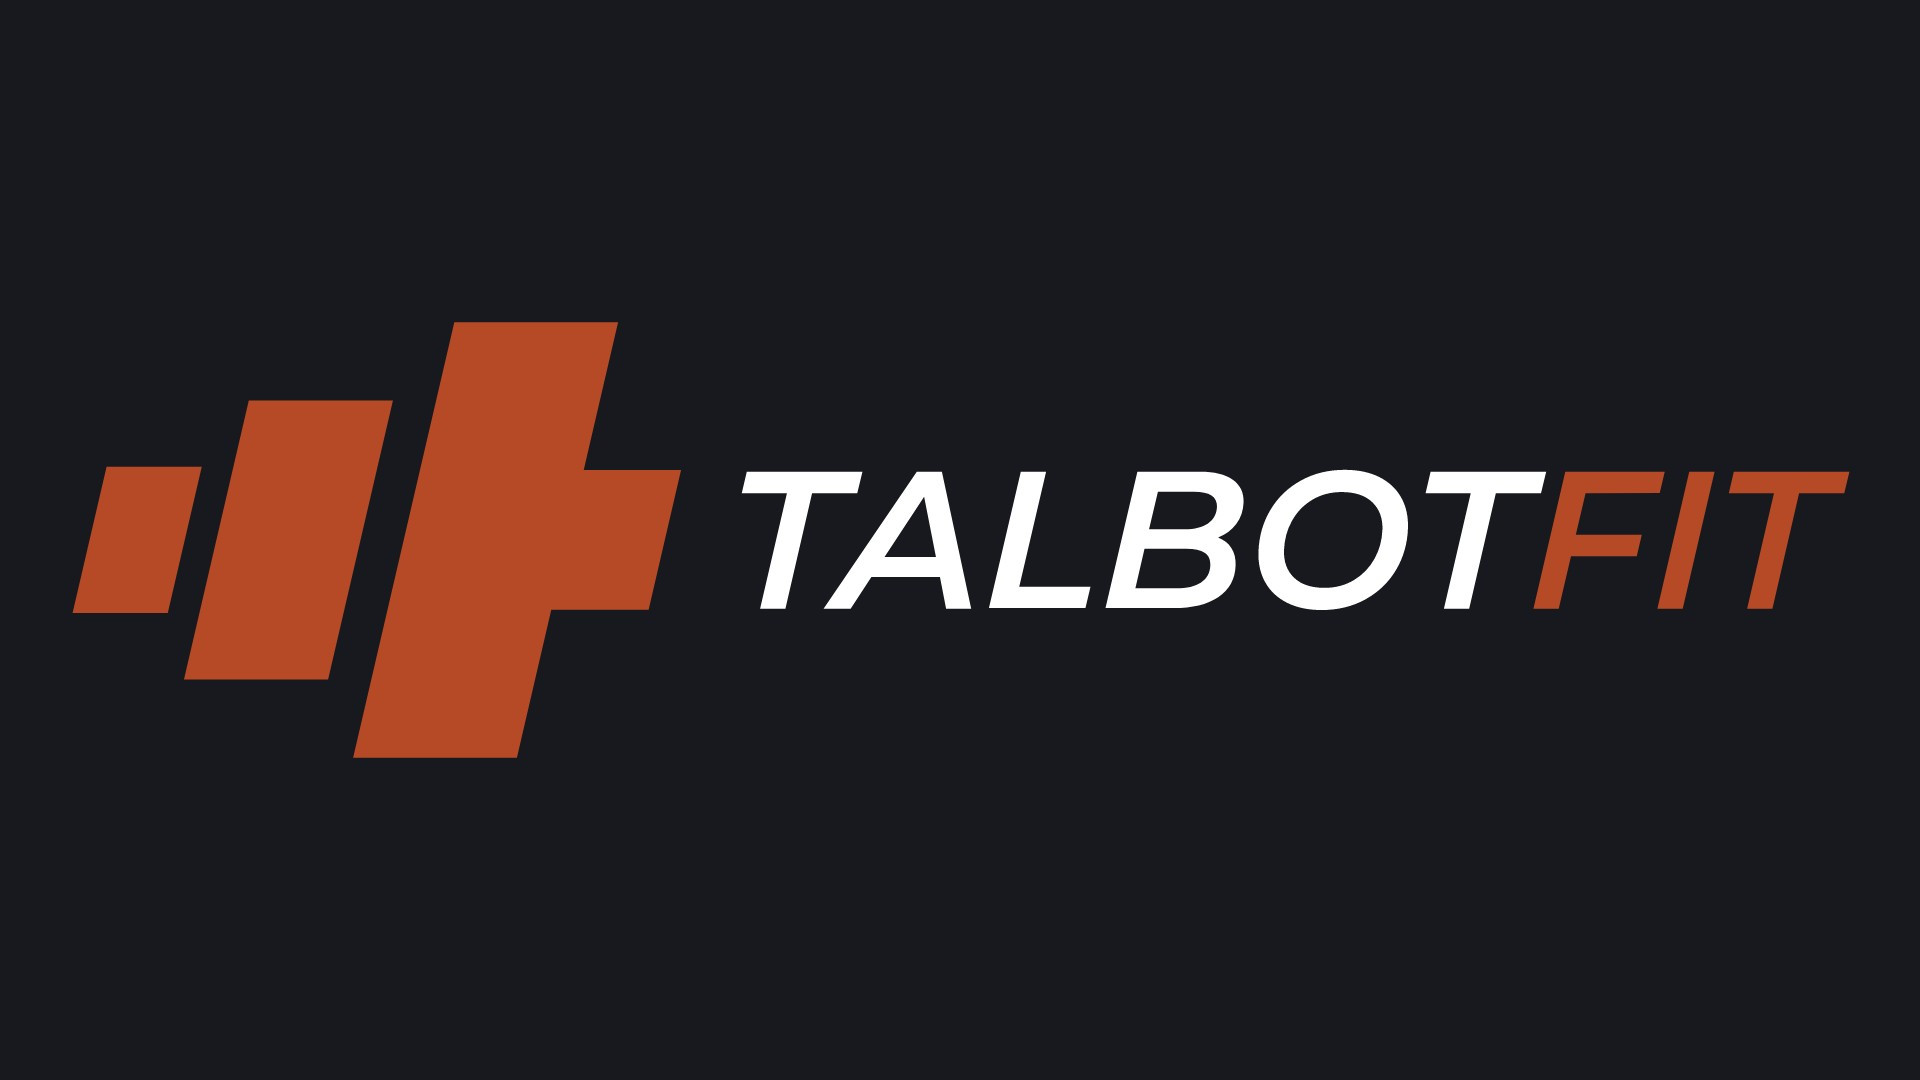 Talbot hotel x www.talbotfit.ie